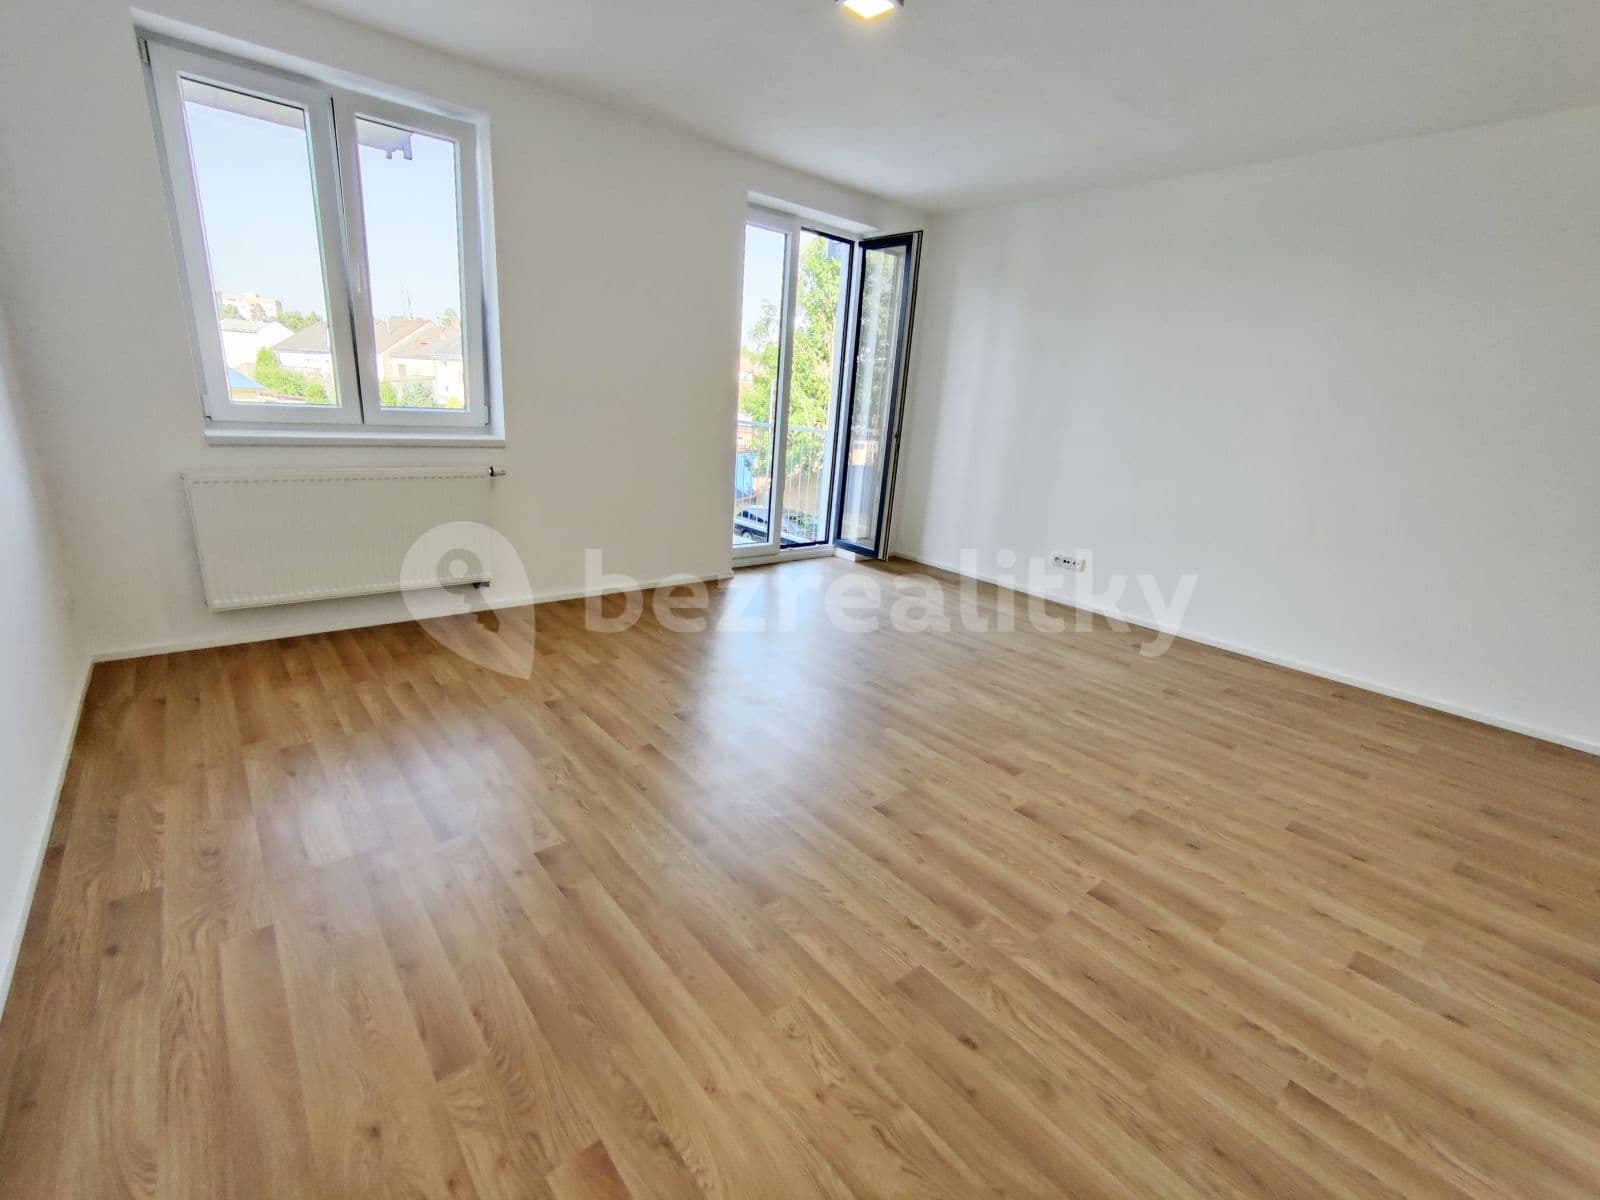 1 bedroom with open-plan kitchen flat to rent, 55 m², Říční, Svitavy, Pardubický Region